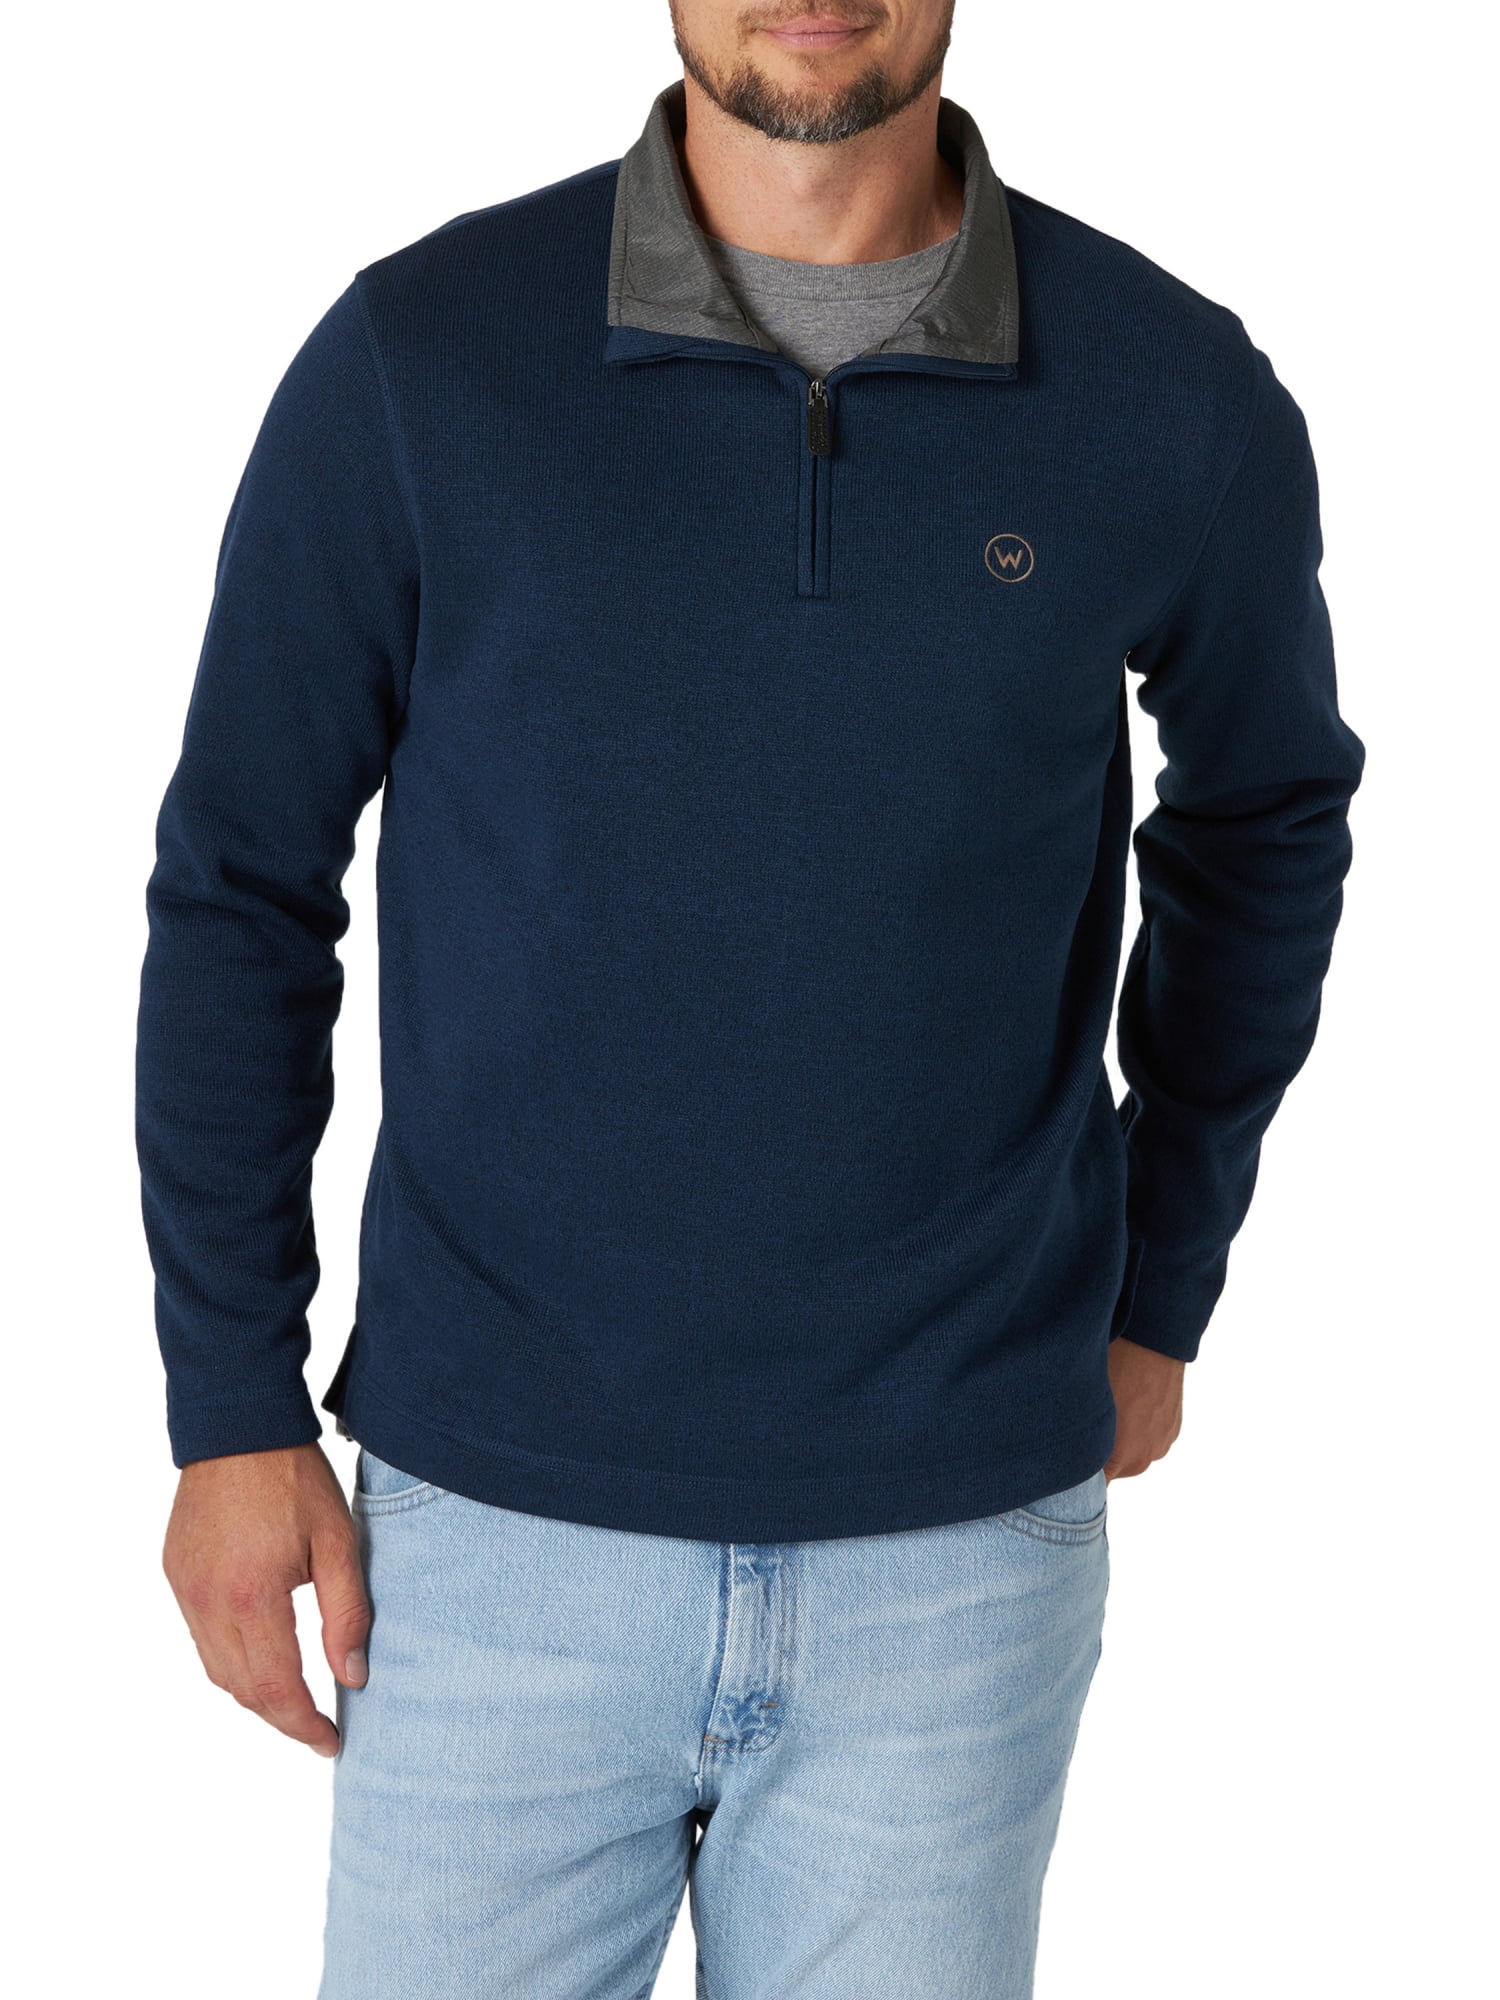 Wrangler Men's Fleece Hoodie Sweater Fleece Jumper 1/4 Zip Relaxed Fit 